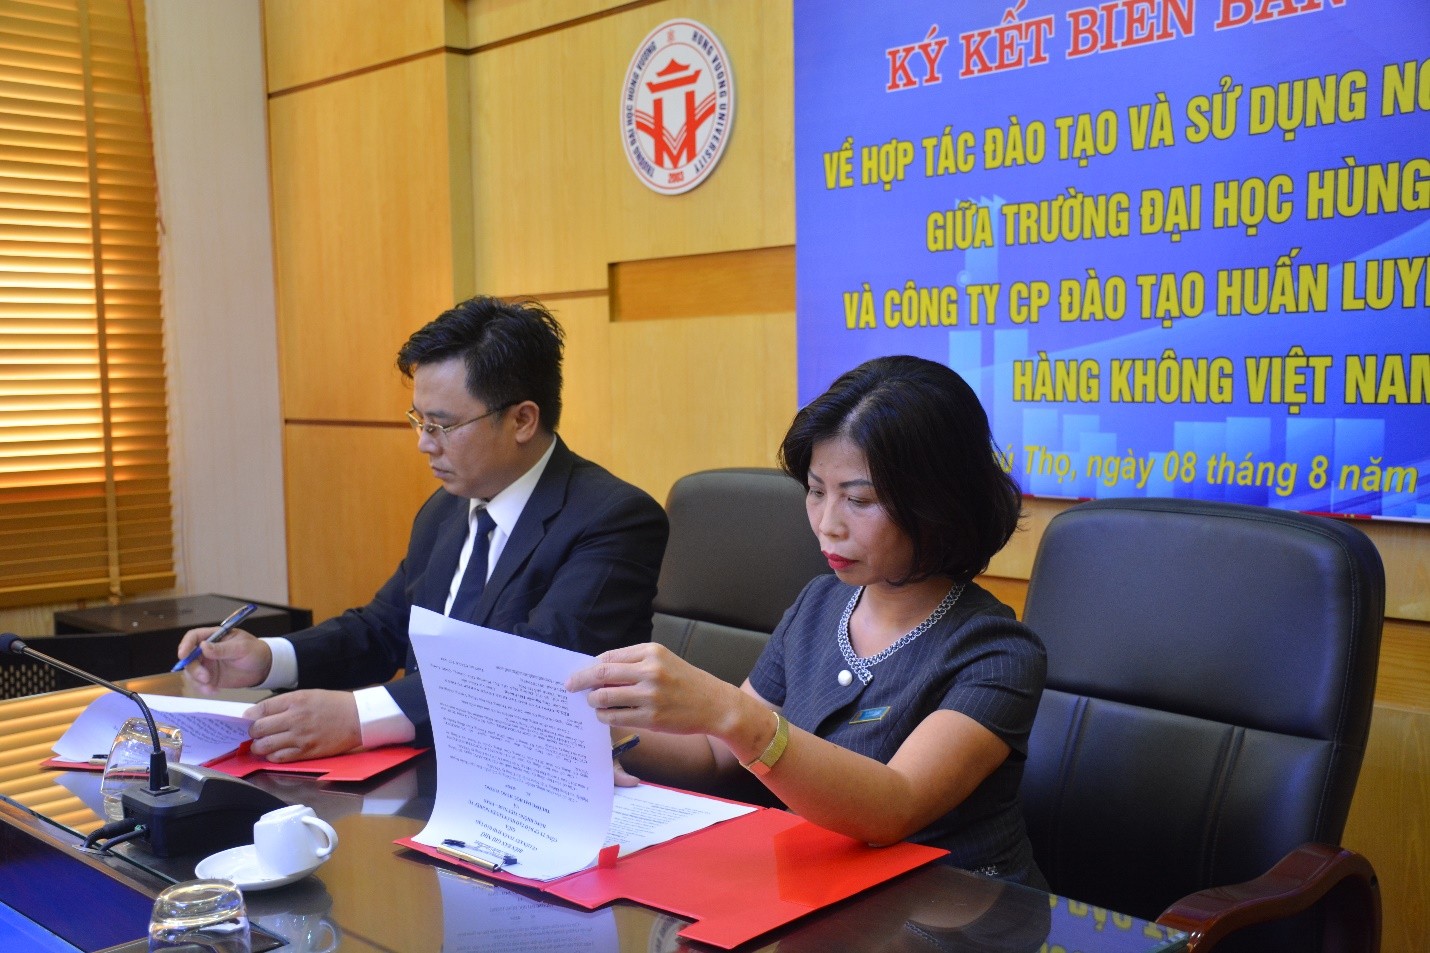 Lễ ký biên bản ghi nhớ hợp tác giữa Trường Đại học Hùng Vương và Công ty cổ phần đào tạo huấn luyện nghiệp vụ hàng không Việt Nam